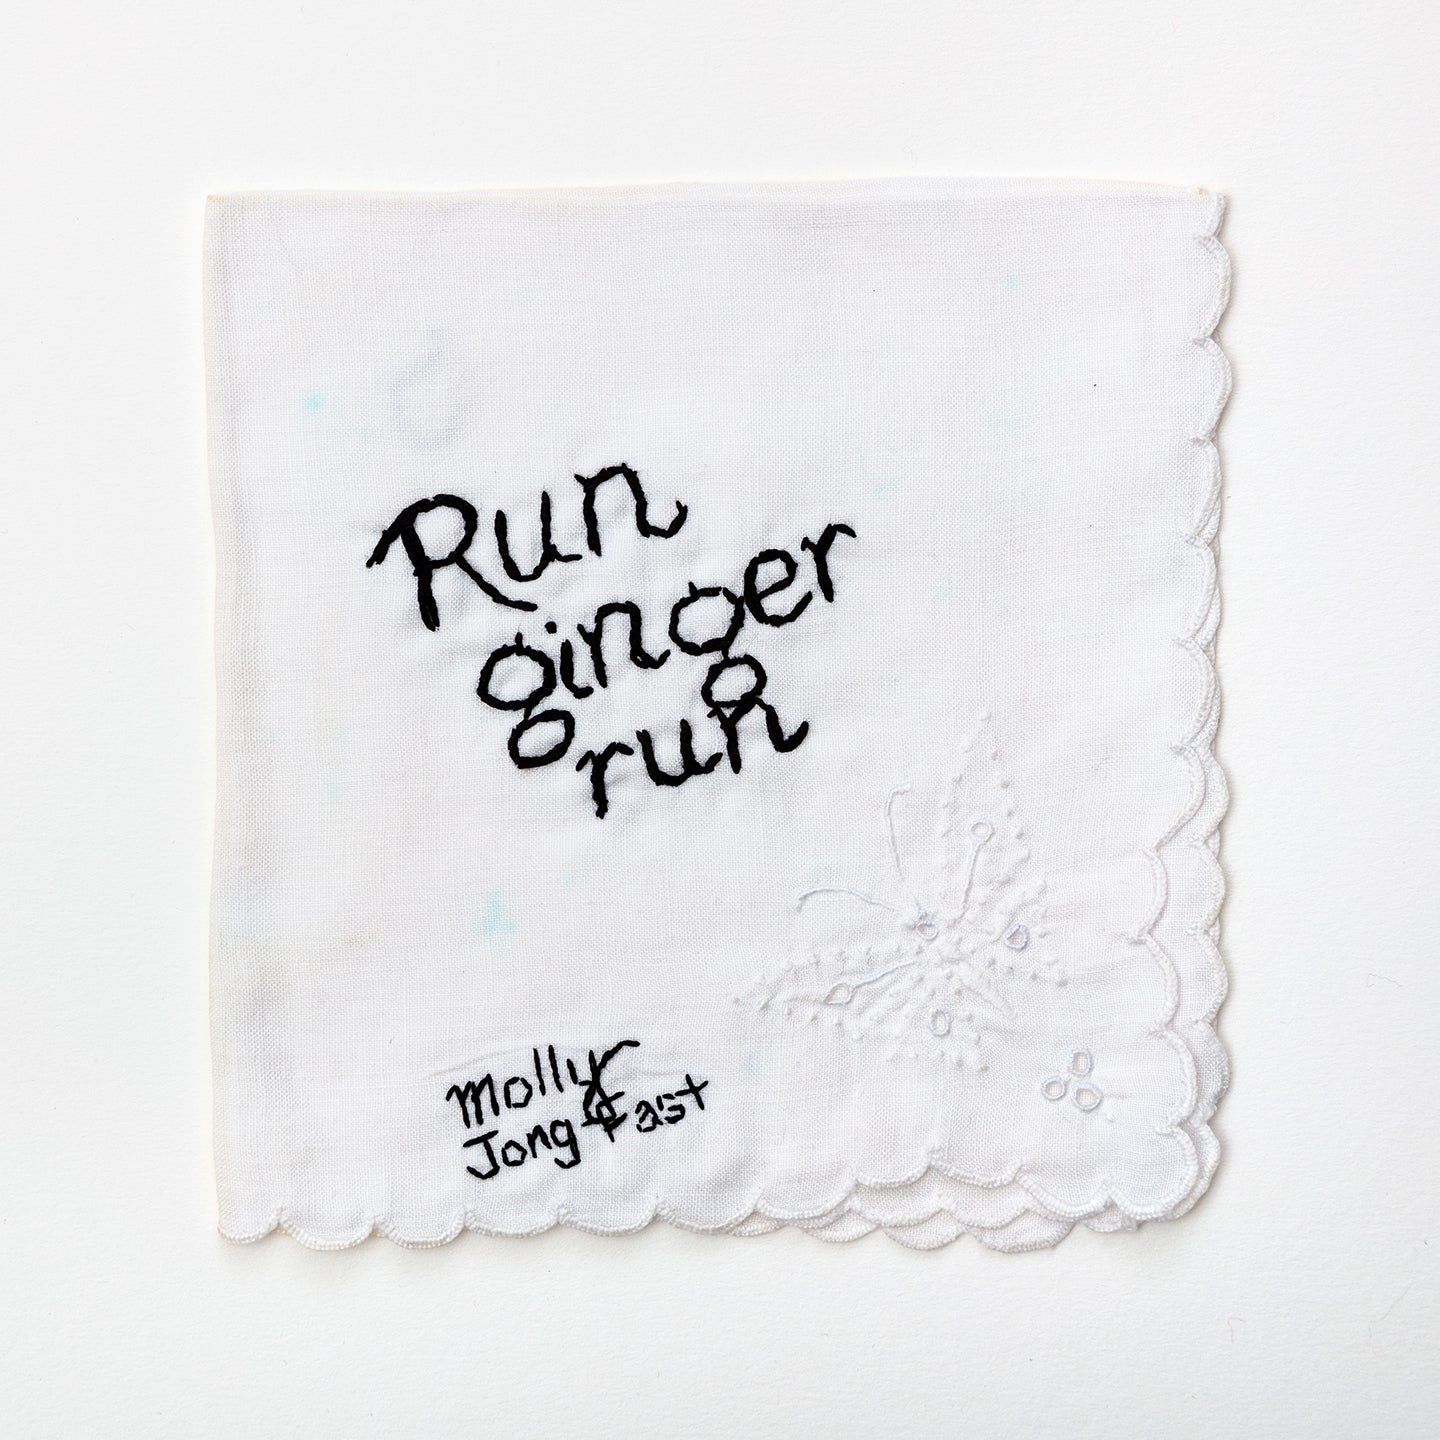 Diana Weymar | Run ginger run